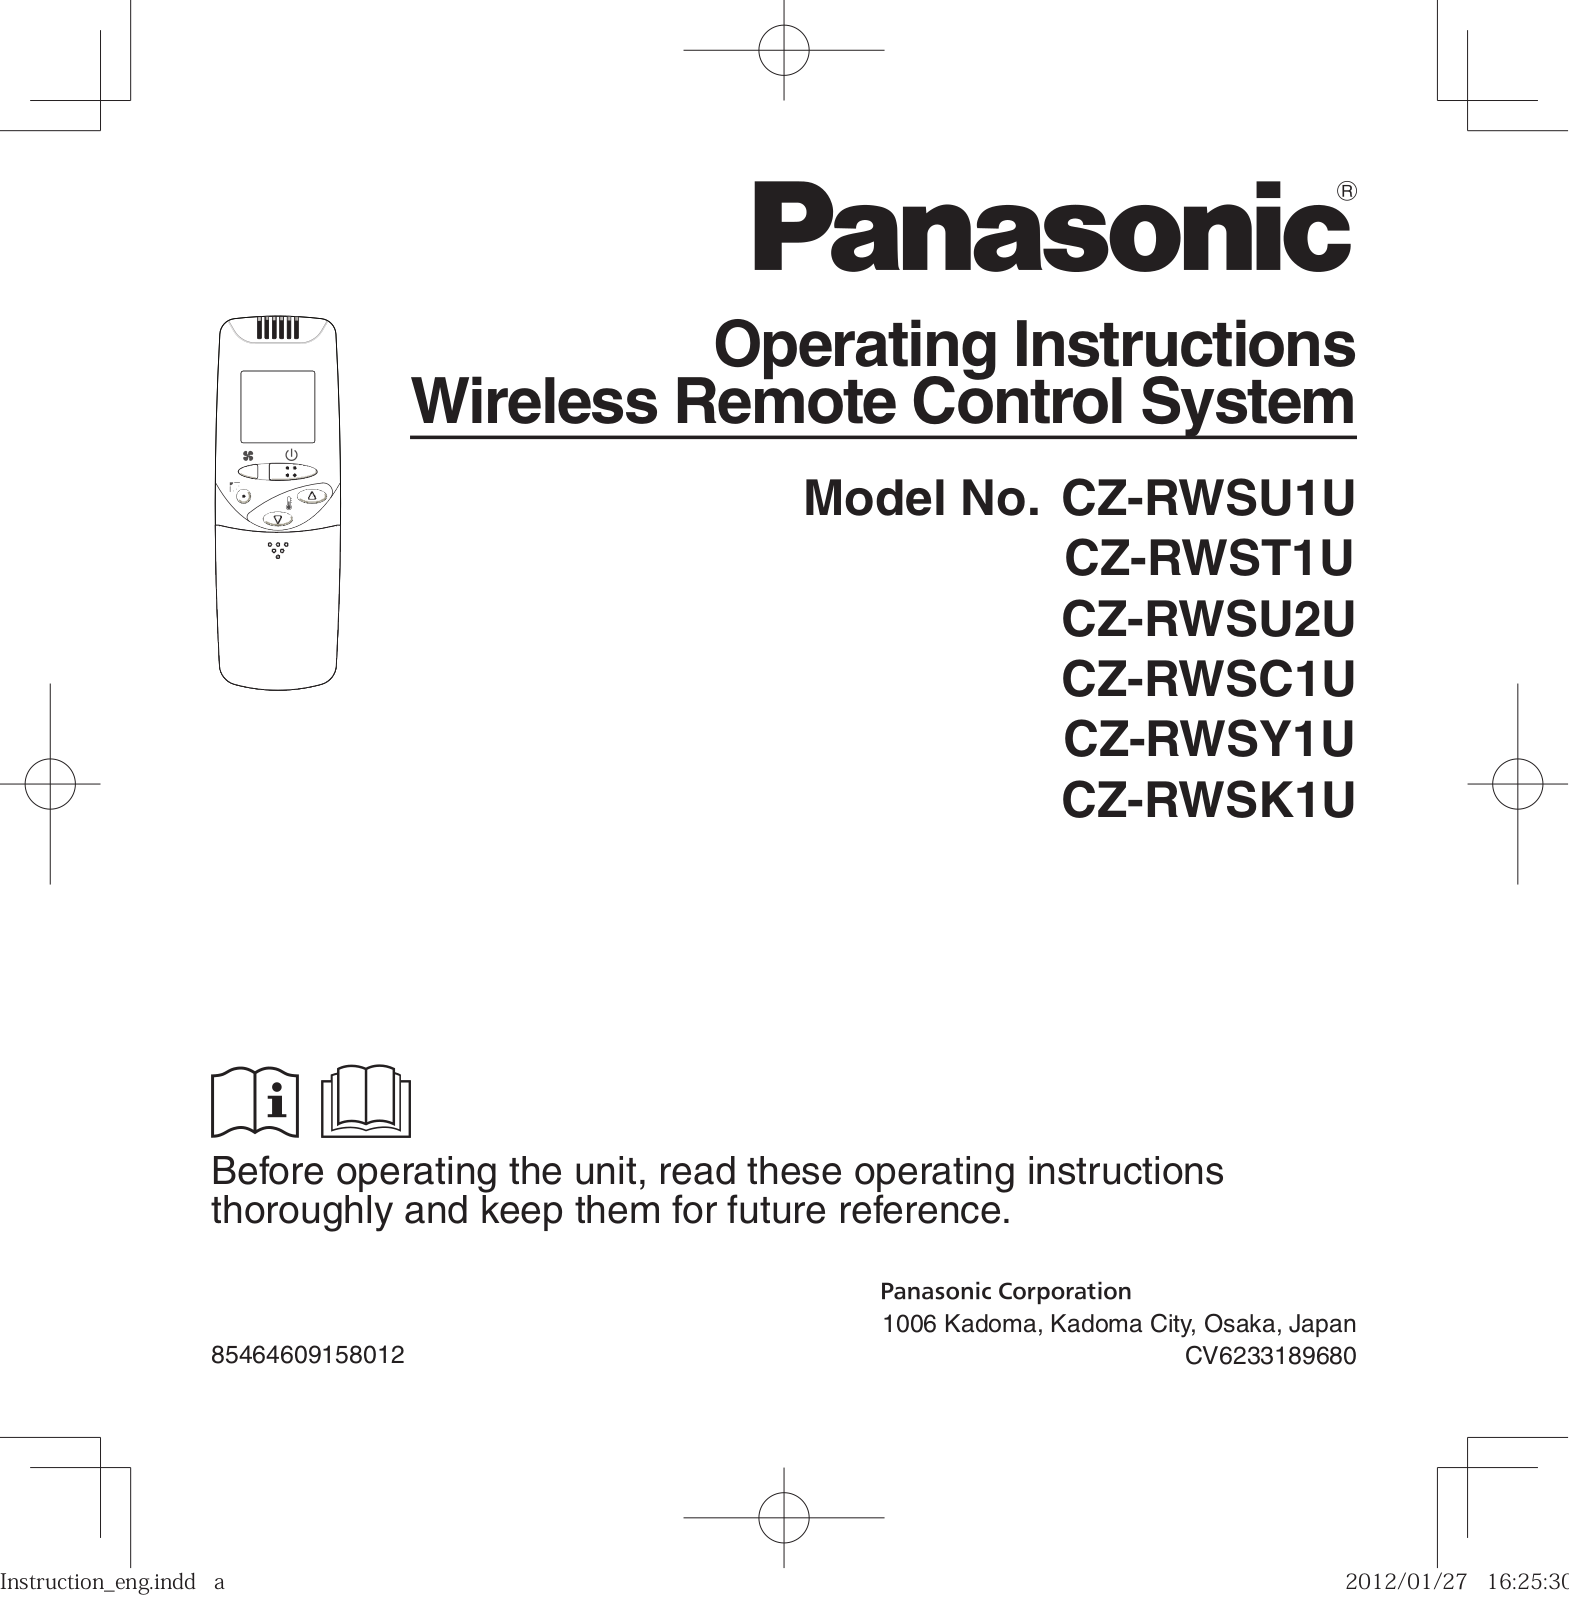 Panasonic CZ-RWSU1U, CZ-RWSK1U, CZ-RWST1U, CZ-RWSC1U, CZ-RWSY1U User Manual